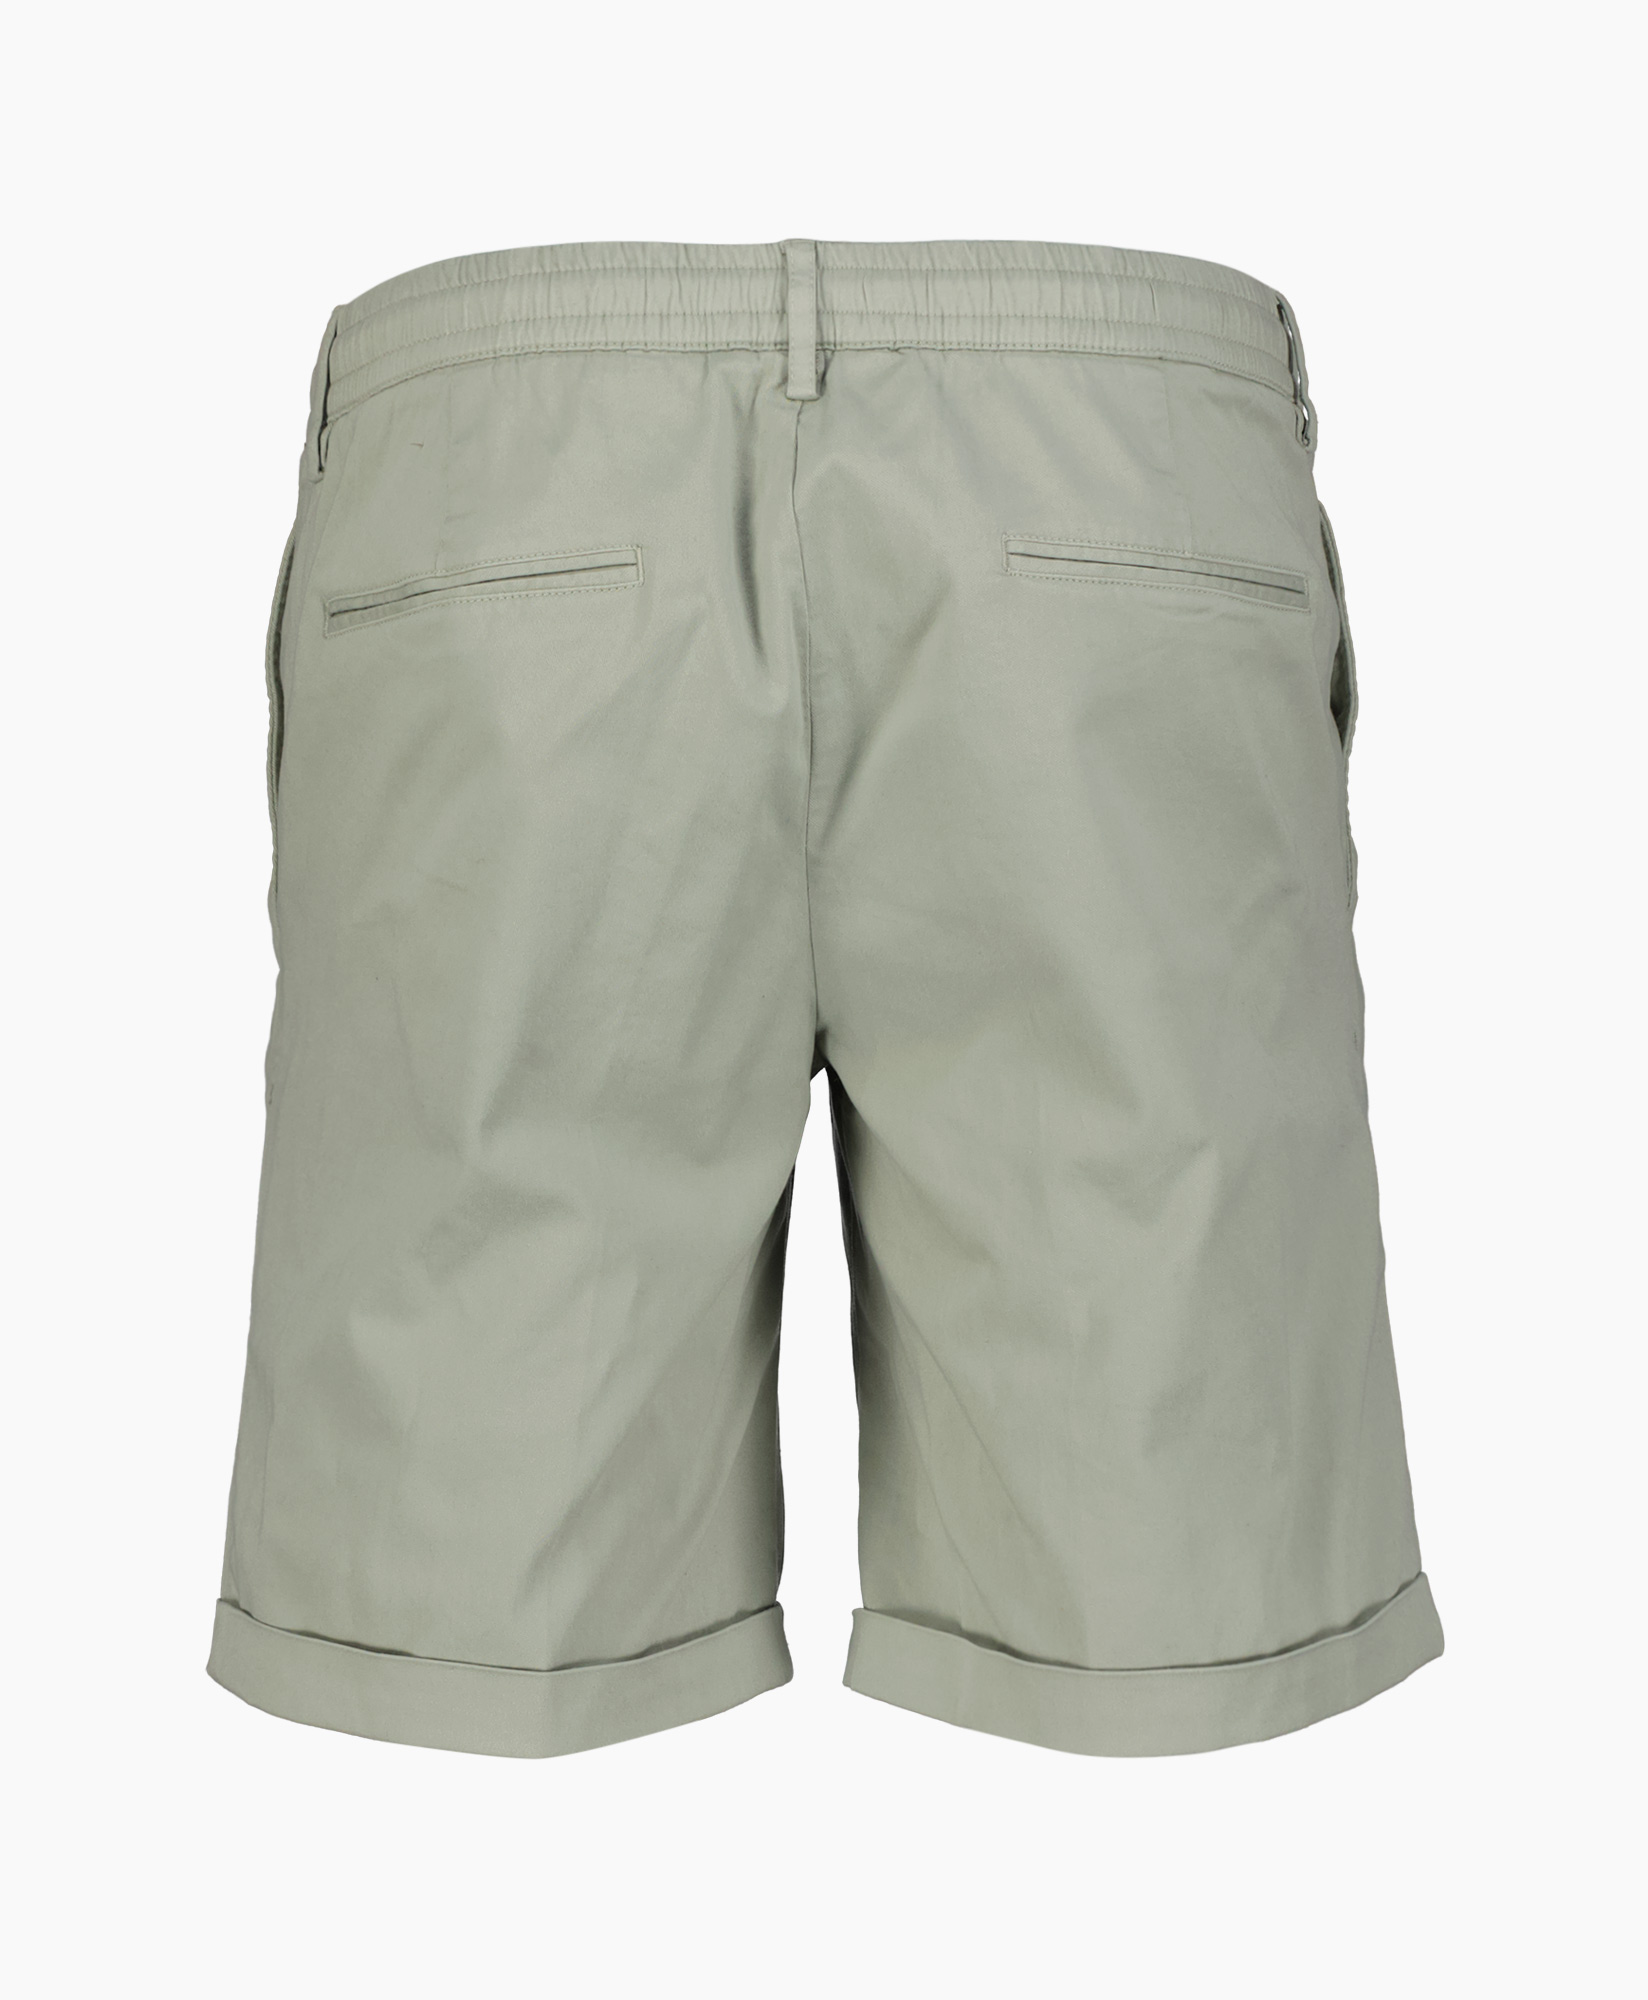 Short Trousers 845 Short midden groen